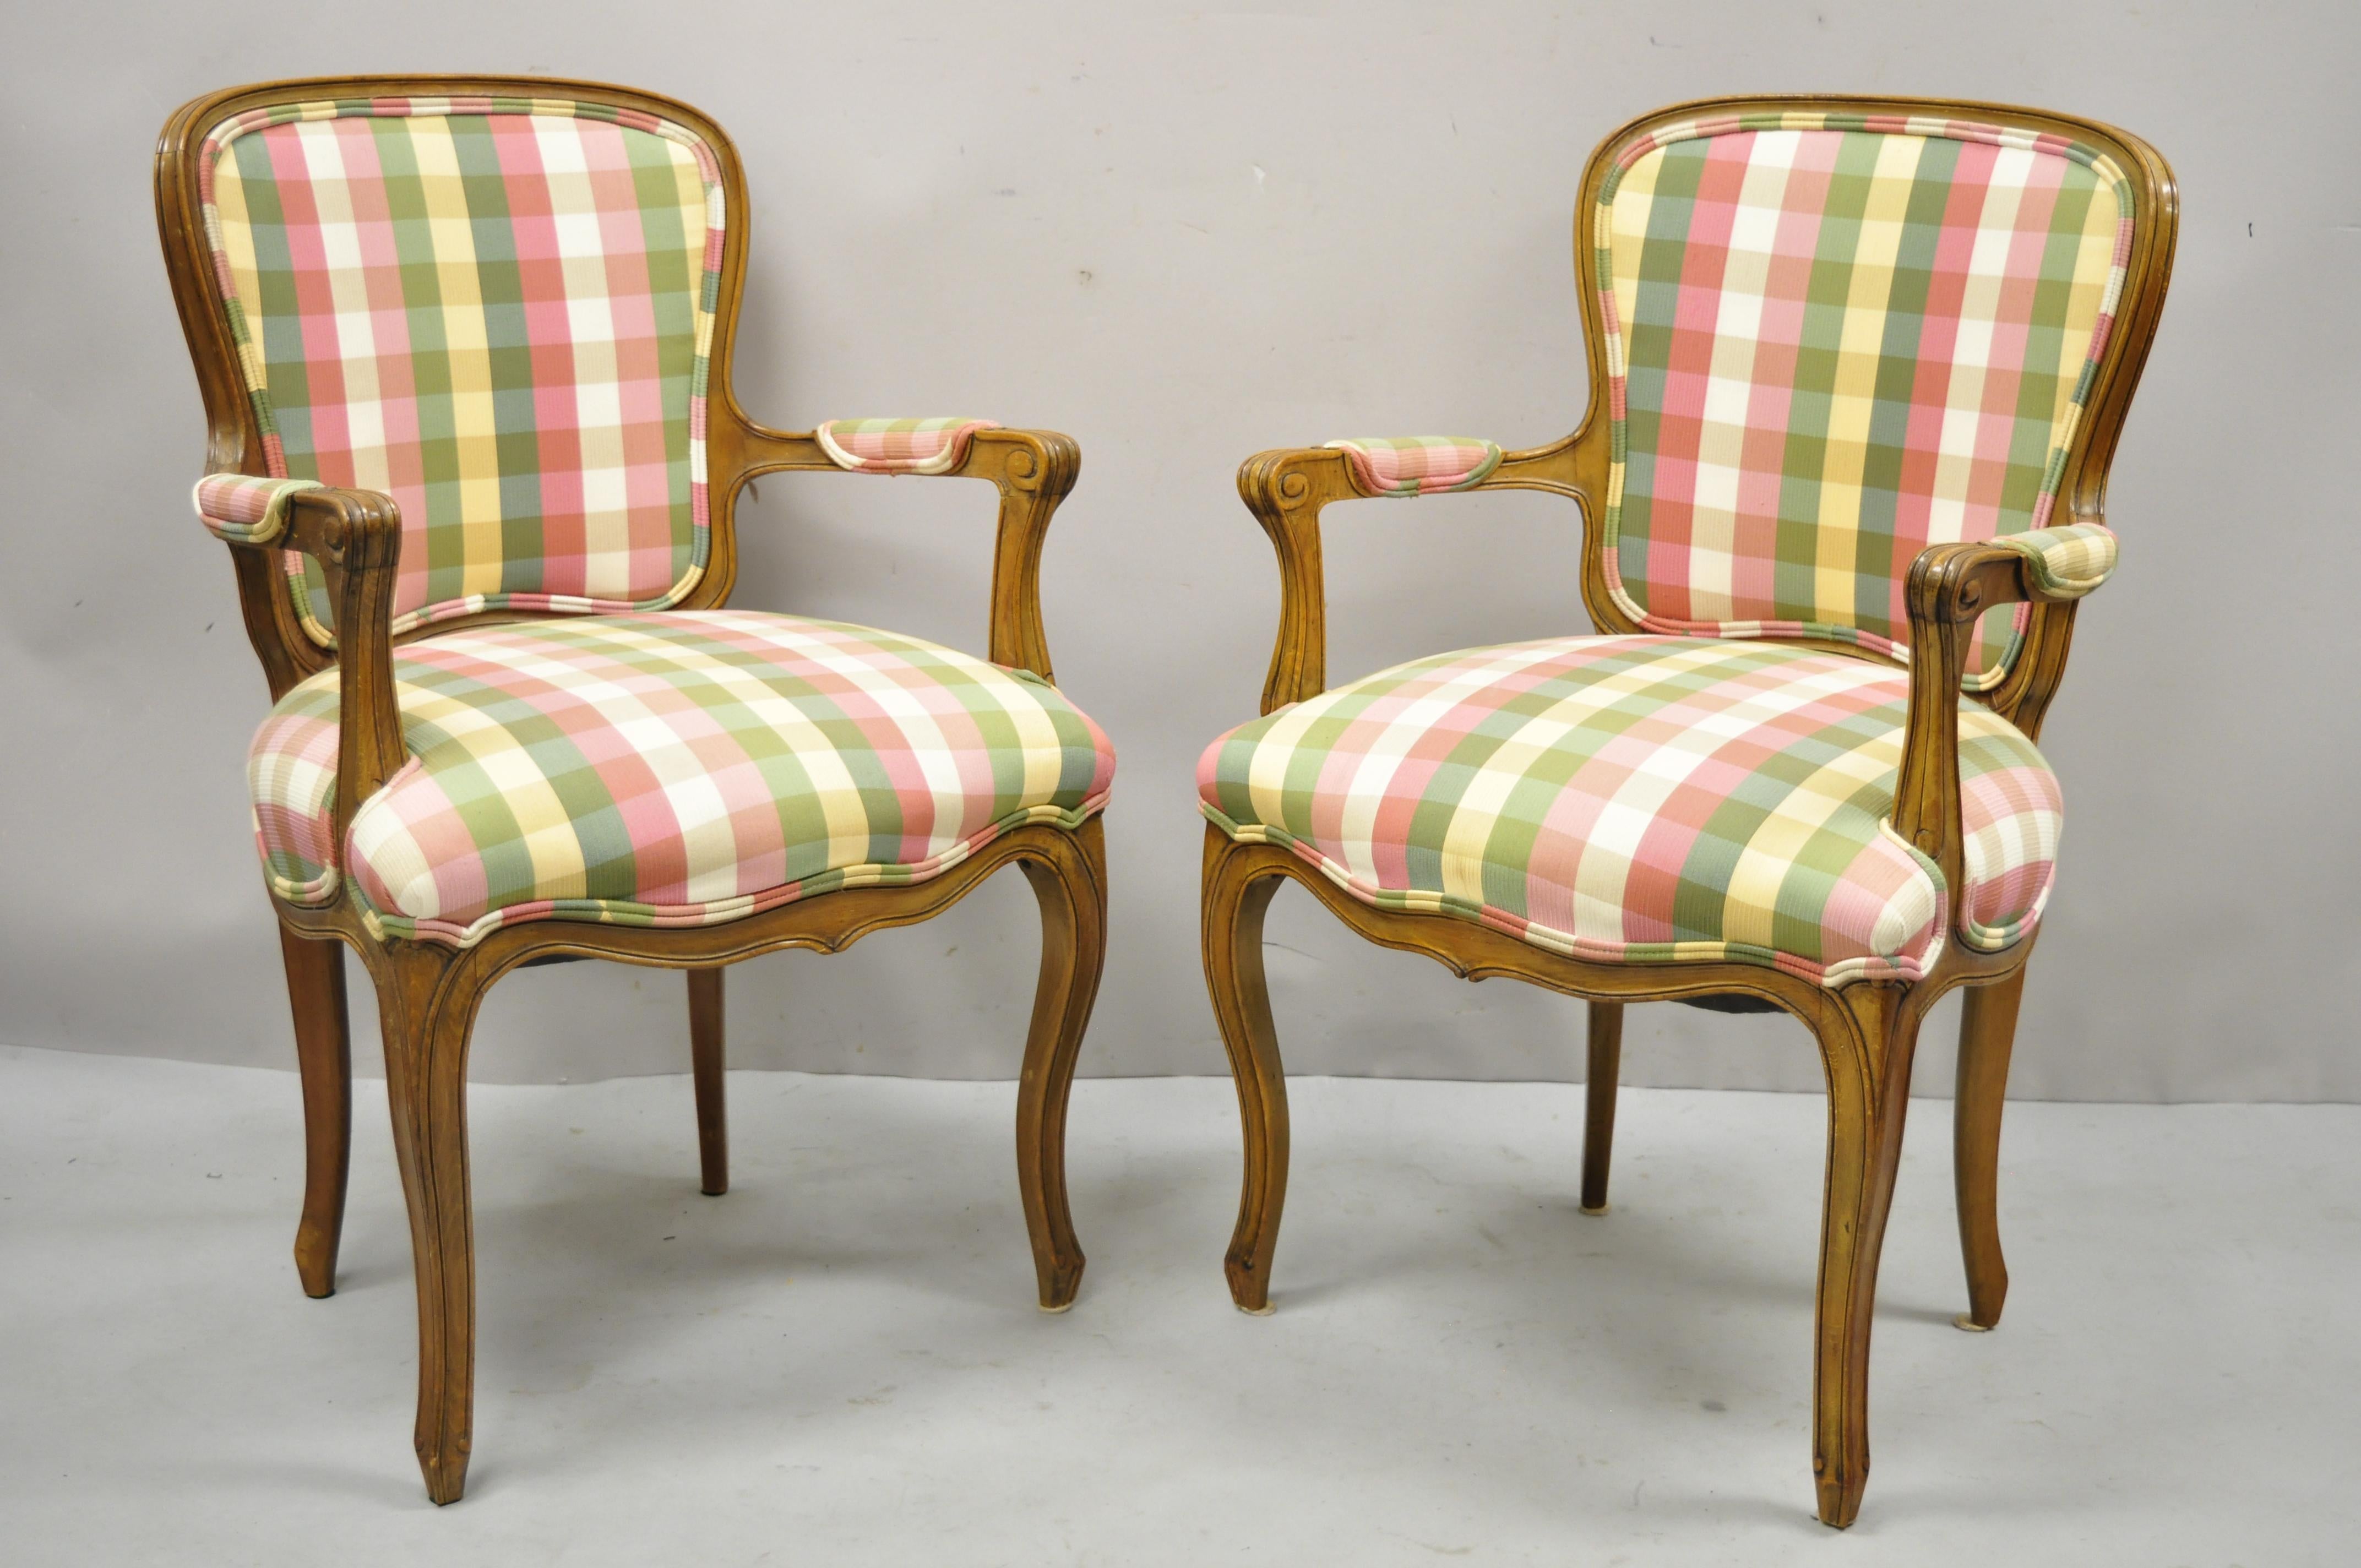 Vintage French Provincial Louis XV style fauteuil chairs by Simon Loscertales Bona - a Pair. L'article présente une tapisserie à carreaux roses et verts, un cadre en bois massif, une finition vieillie, une étiquette d'origine, des pieds cabriole,